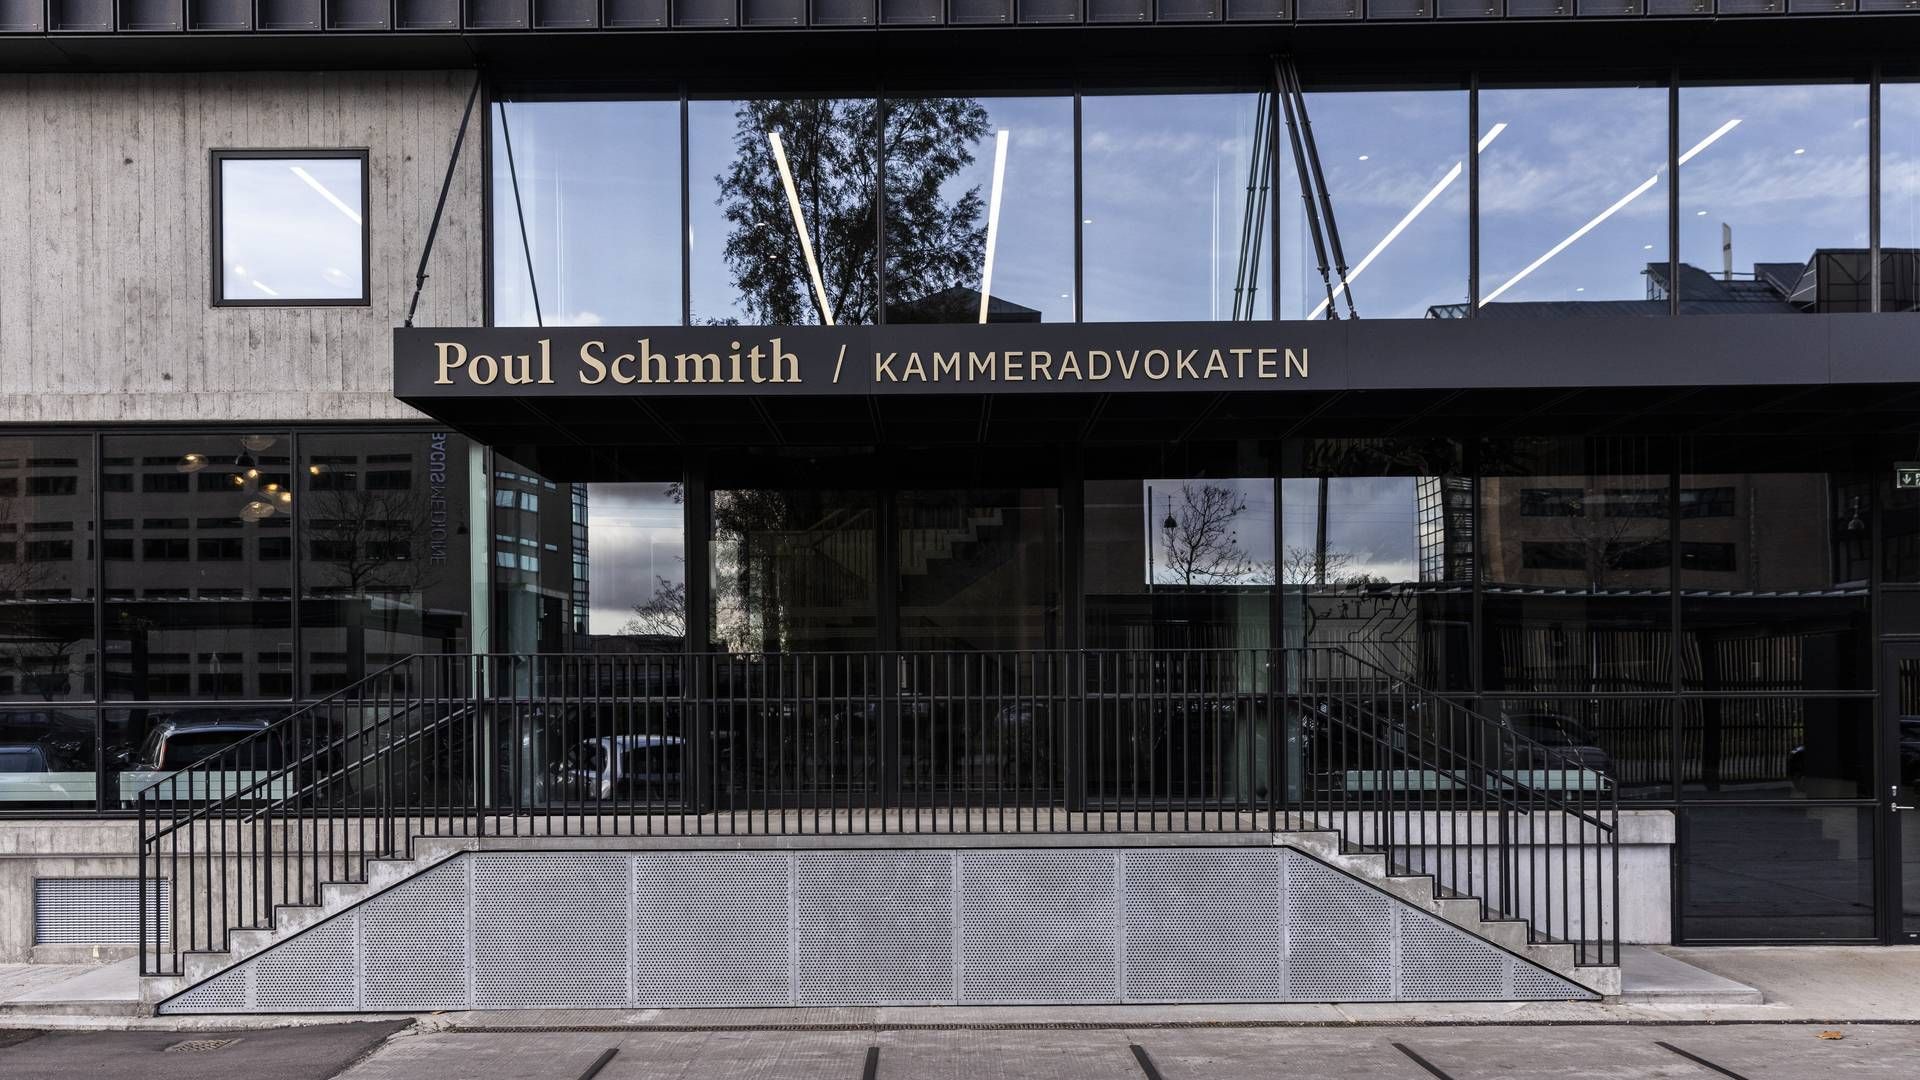 Poul Schmith/Kammeradvokaten kastede sig ind på M&A-markedet i 2017. I dag arbejder der 18 jurister i firmaets M&A-afdeling. | Foto: PR